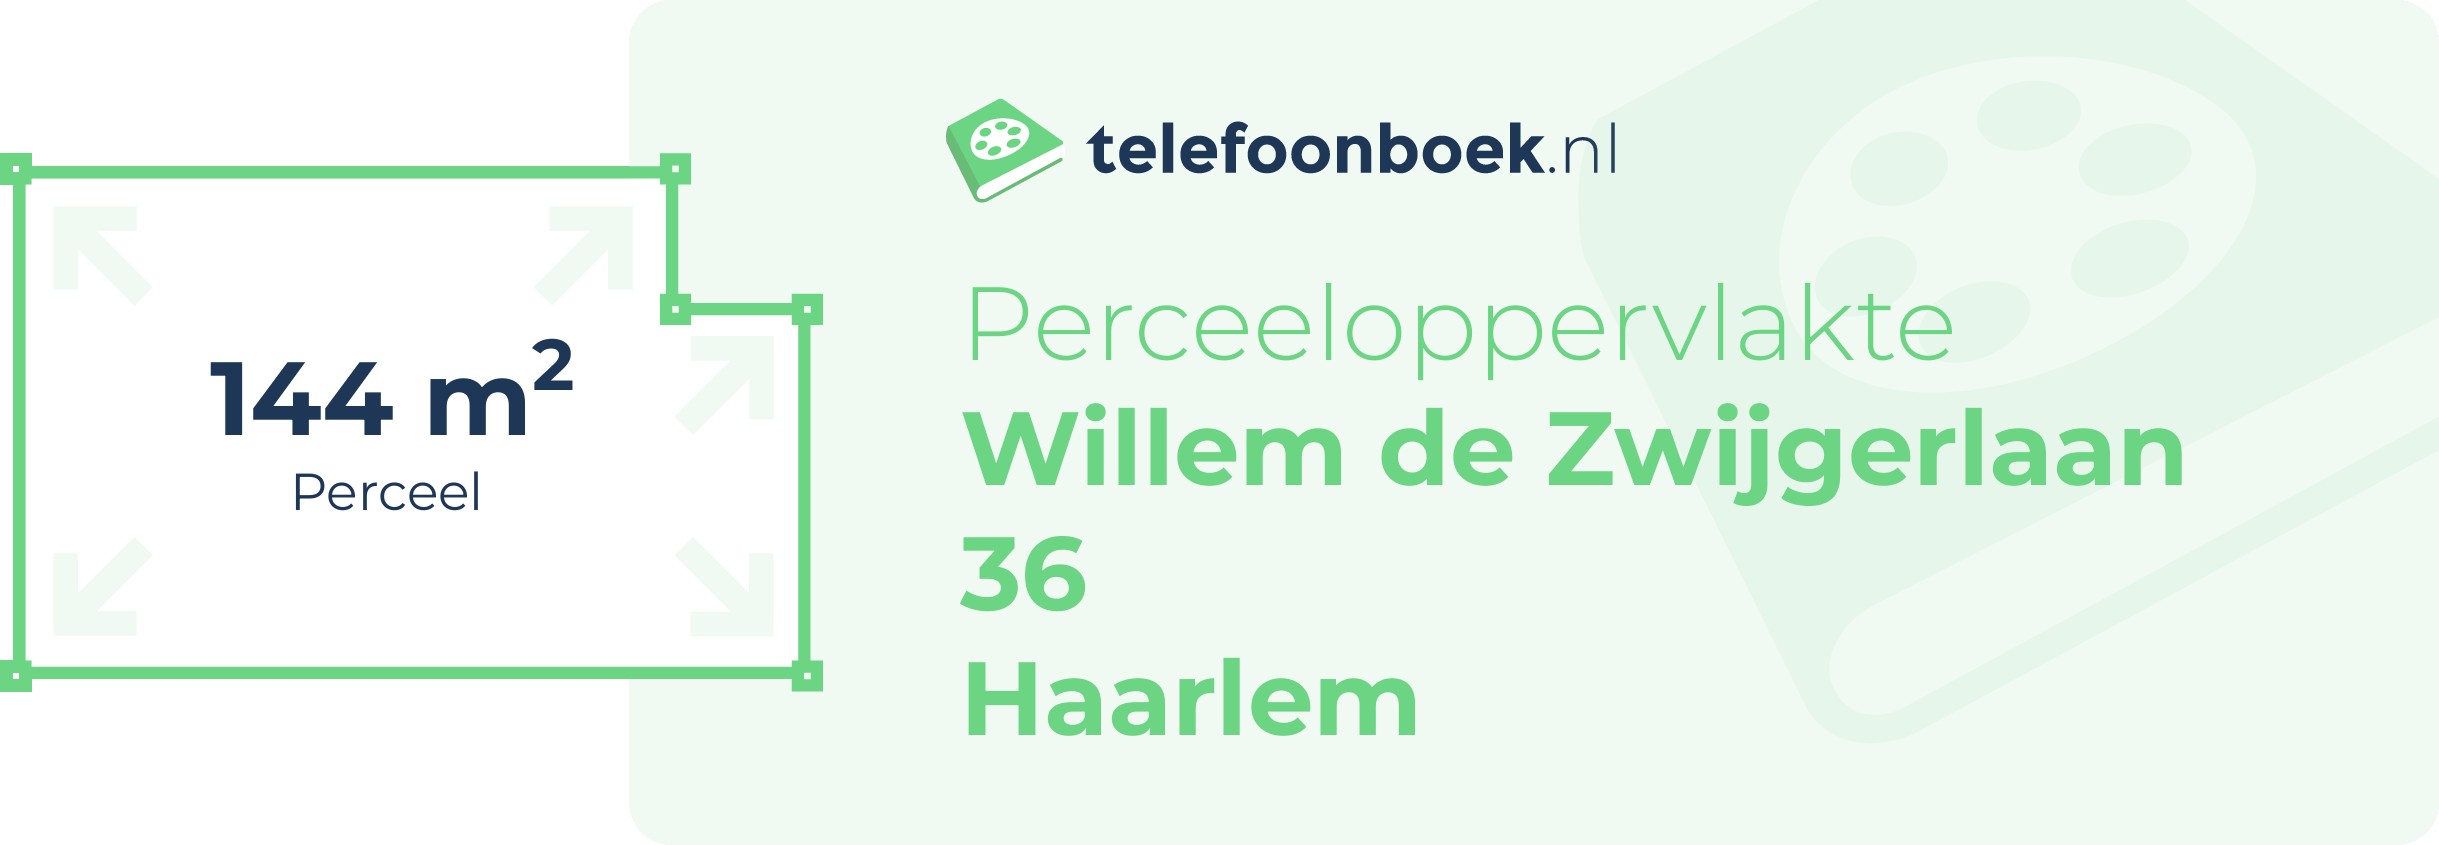 Perceeloppervlakte Willem De Zwijgerlaan 36 Haarlem